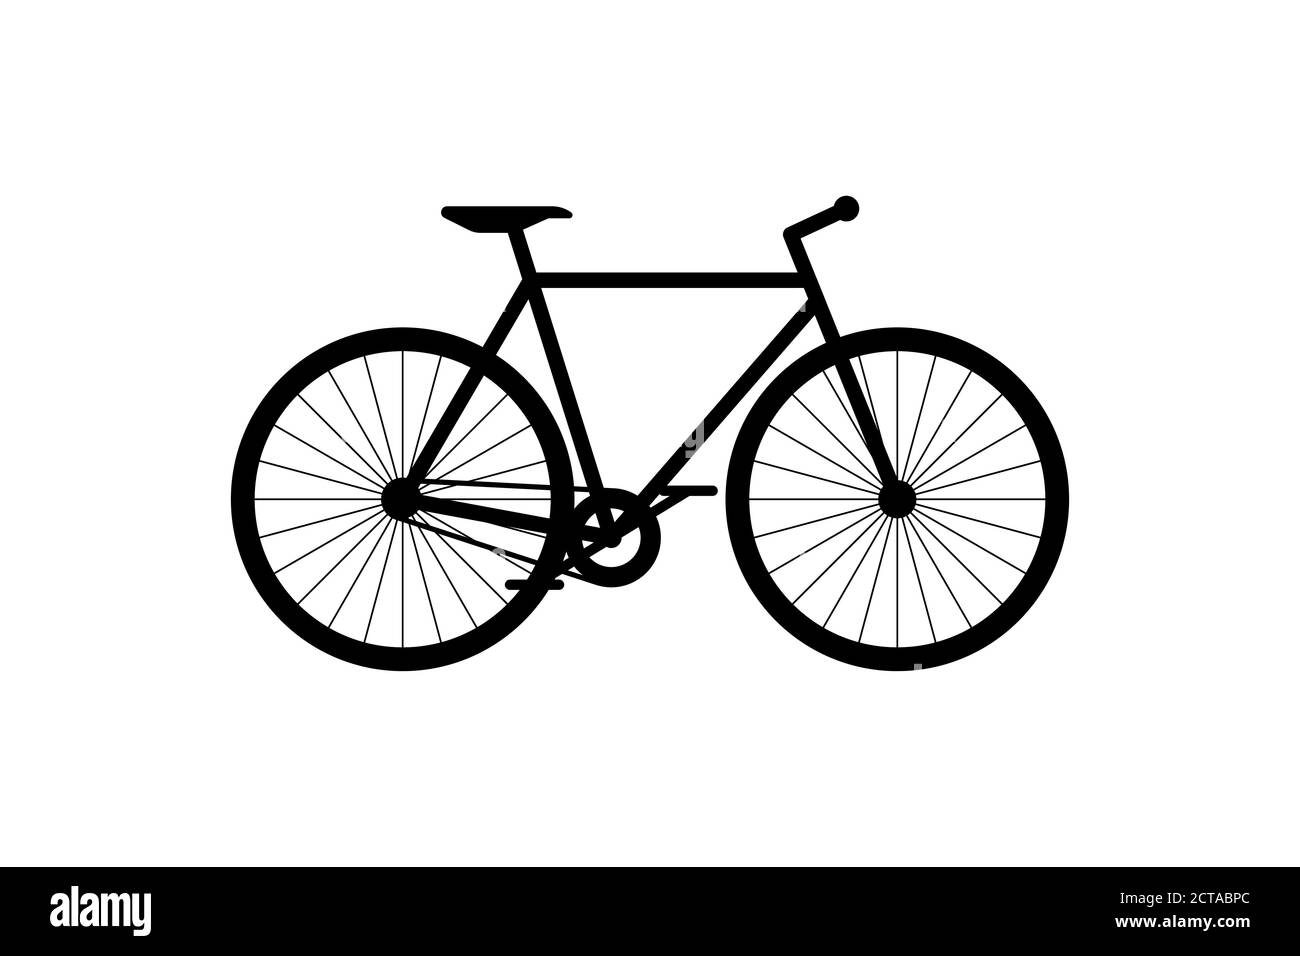 Schwarzes Fahrradsymbol. Zyklus Silhouette Zeichen auf weißem Hintergrund. Fahrrad Stadt Transport Fahrzeug Symbol Vektor eps Abbildung Stock Vektor